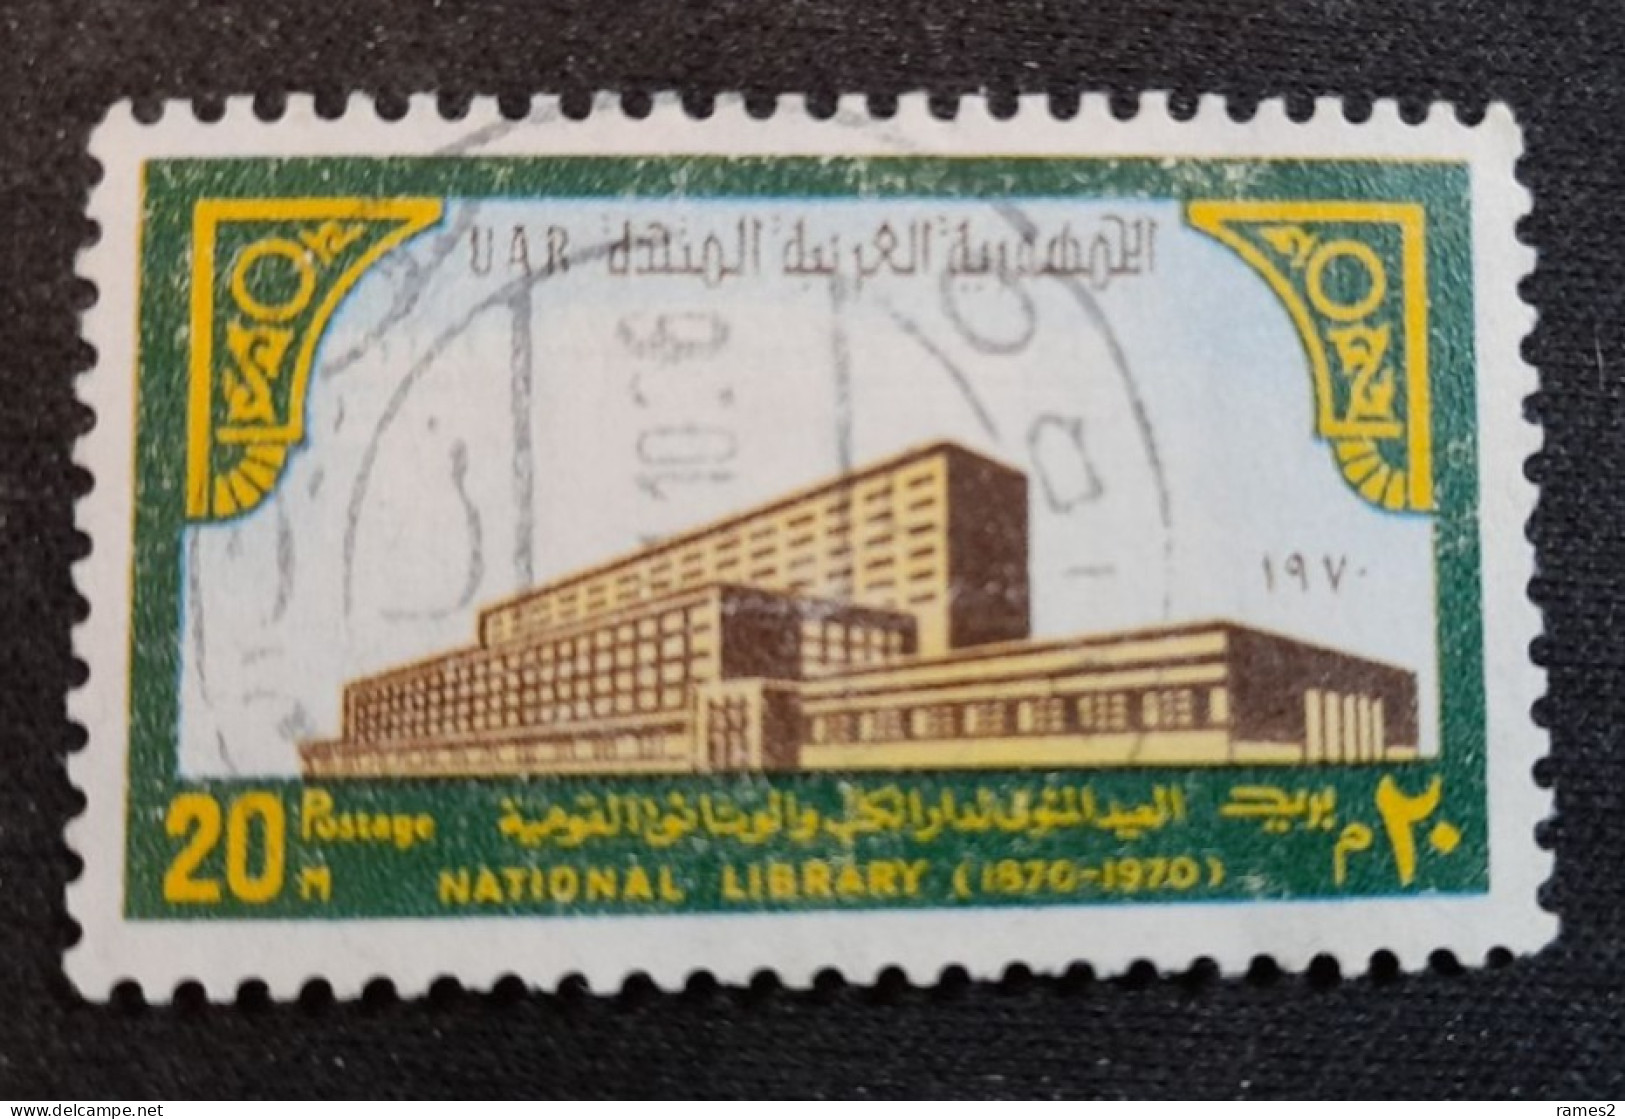 Egypte > 1953-... République > 1960-69 > Oblitérés N° 840 - Usados